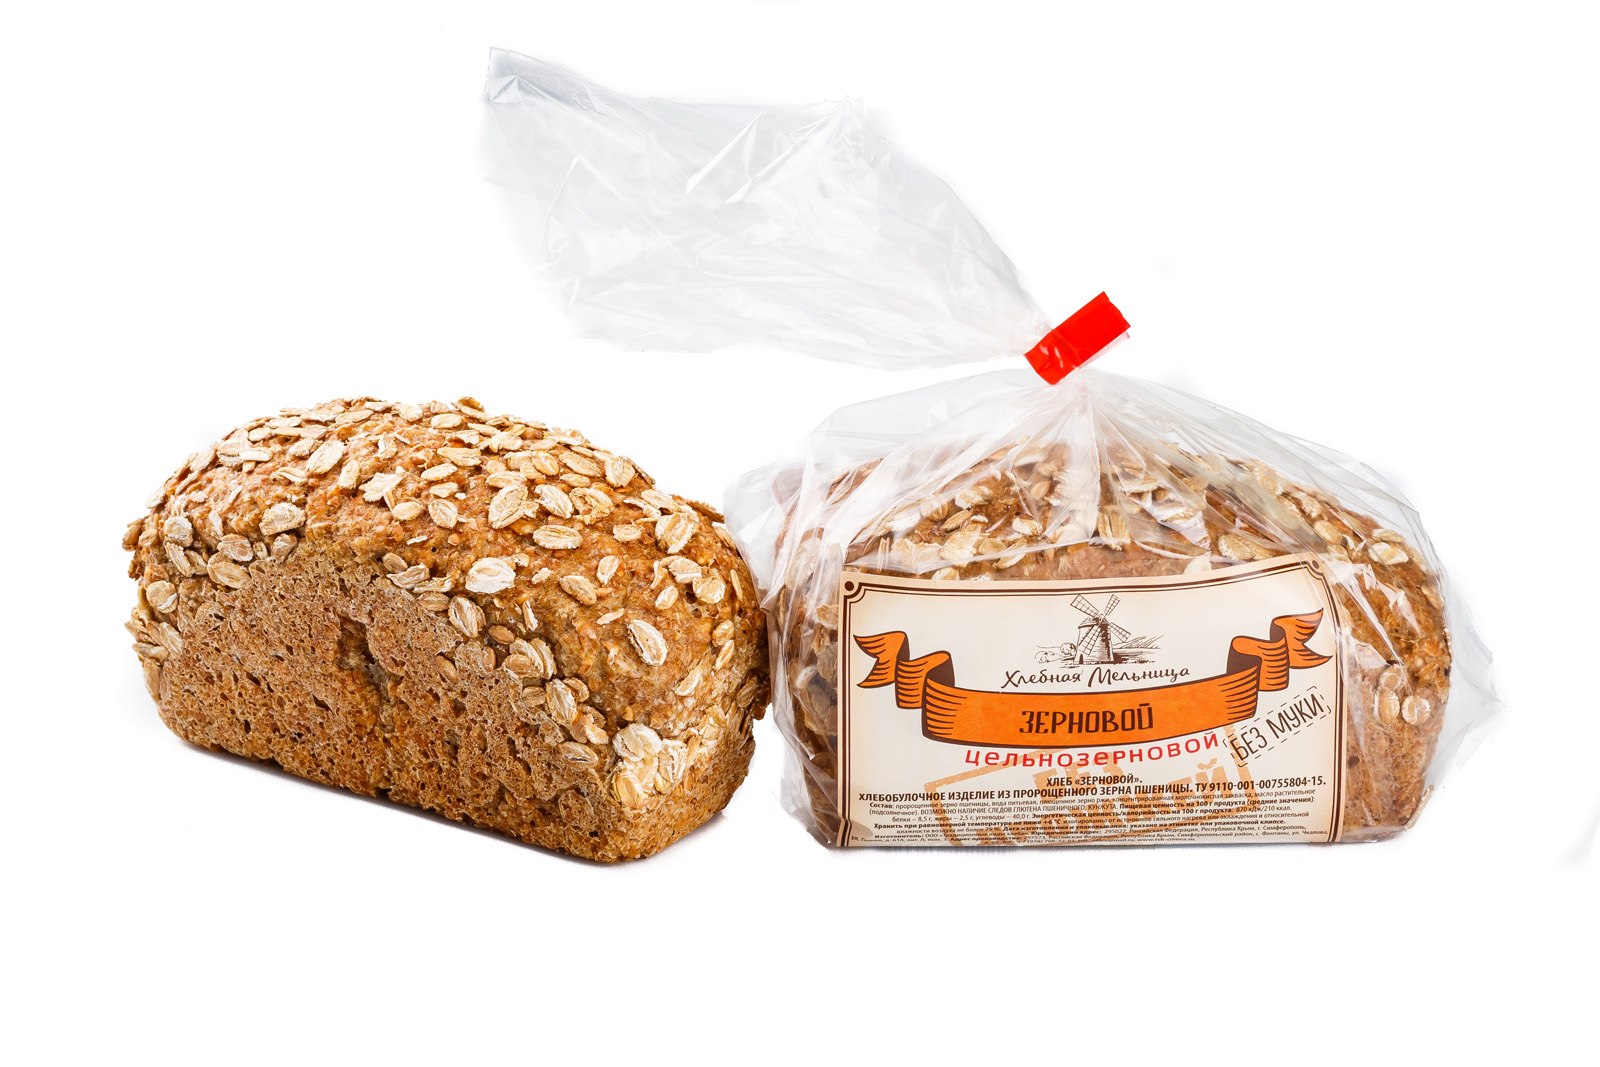 Нужно купить хлеб. Хлеб. Зерновой хлеб. Celnozernovoi xleb. Хлеб злаковый.